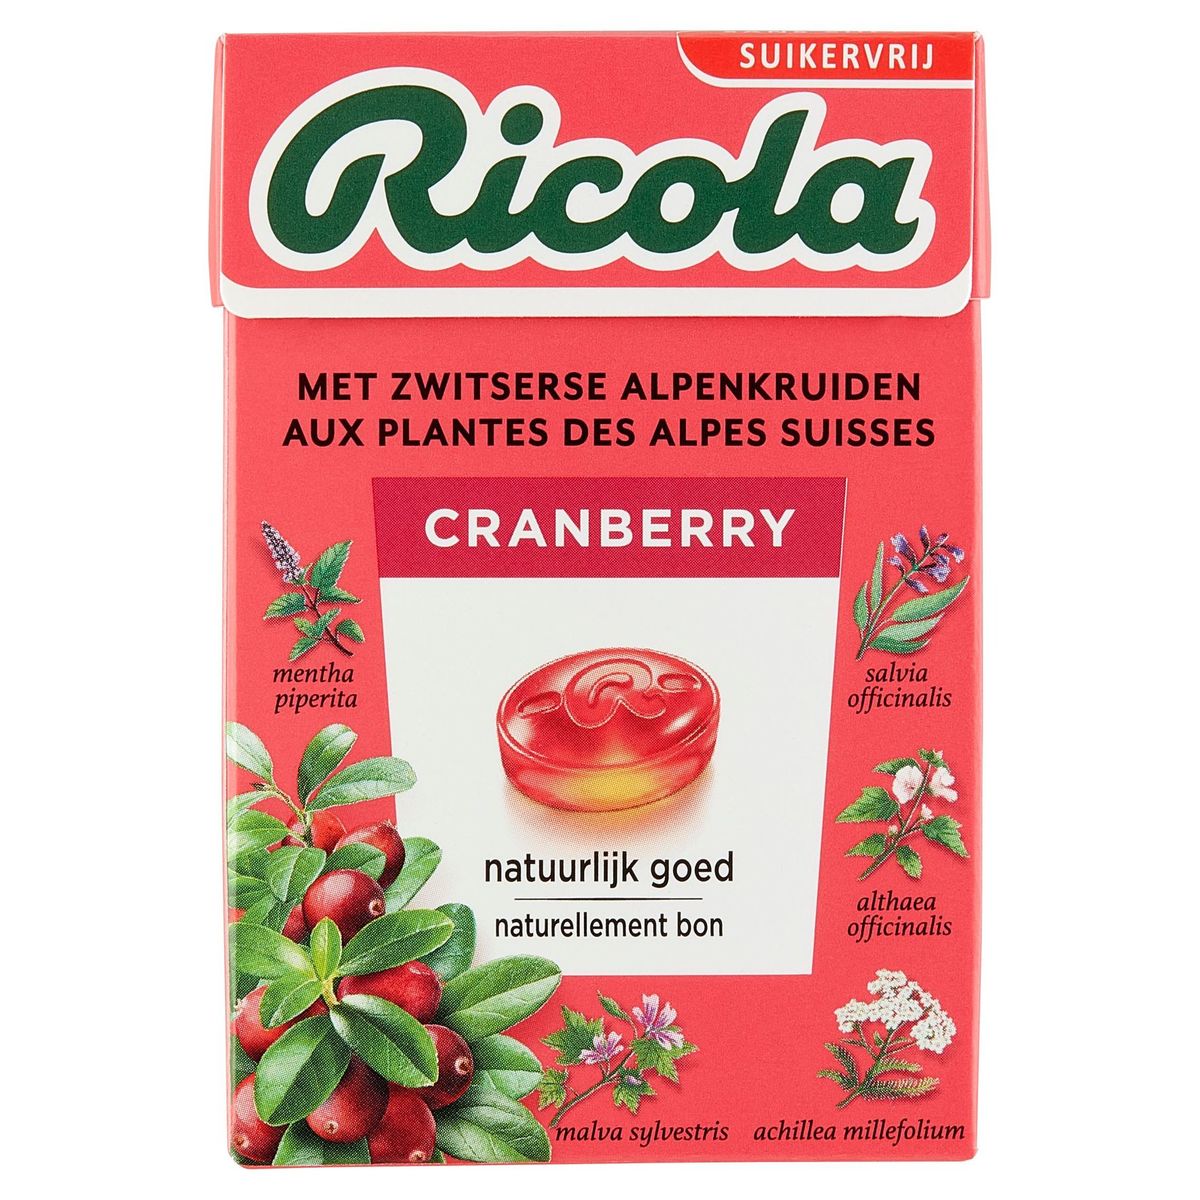 Ricola aux Plantes des Alpes Suisses Cranberry 50 g